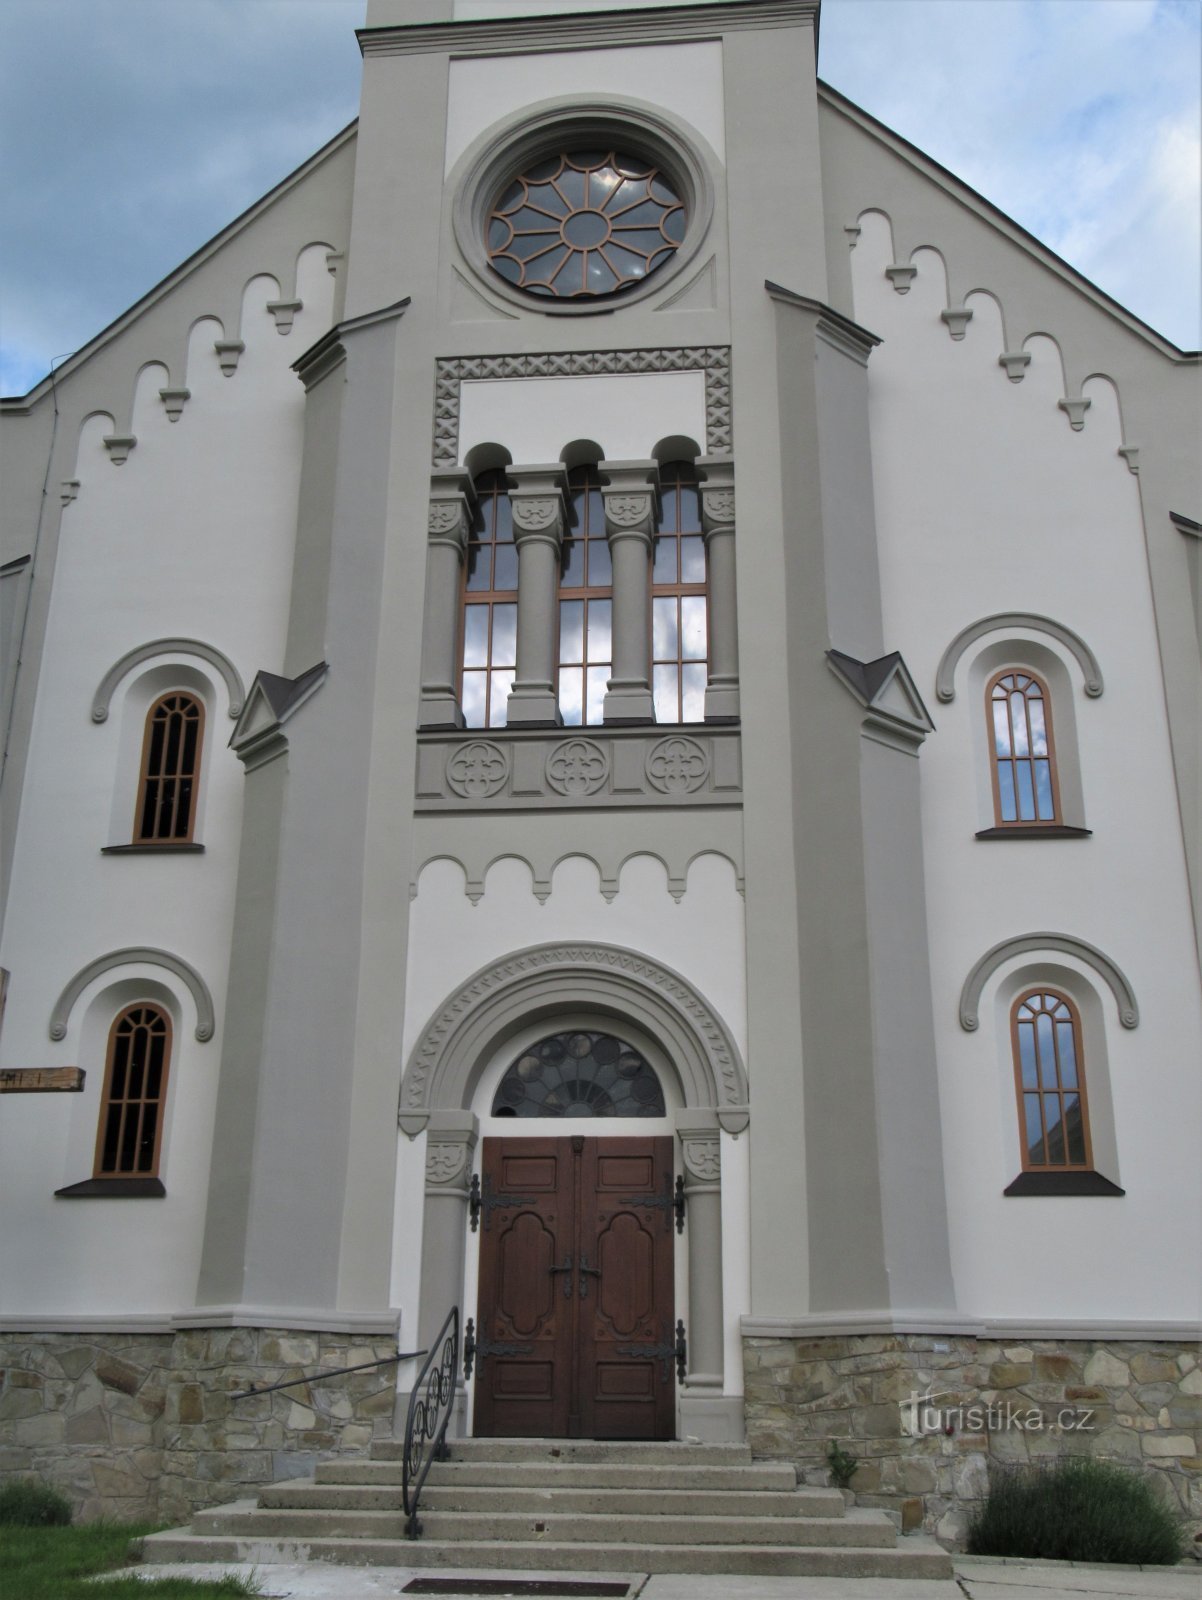 Radějov - Biserica Sf. Chiril și Metodiu